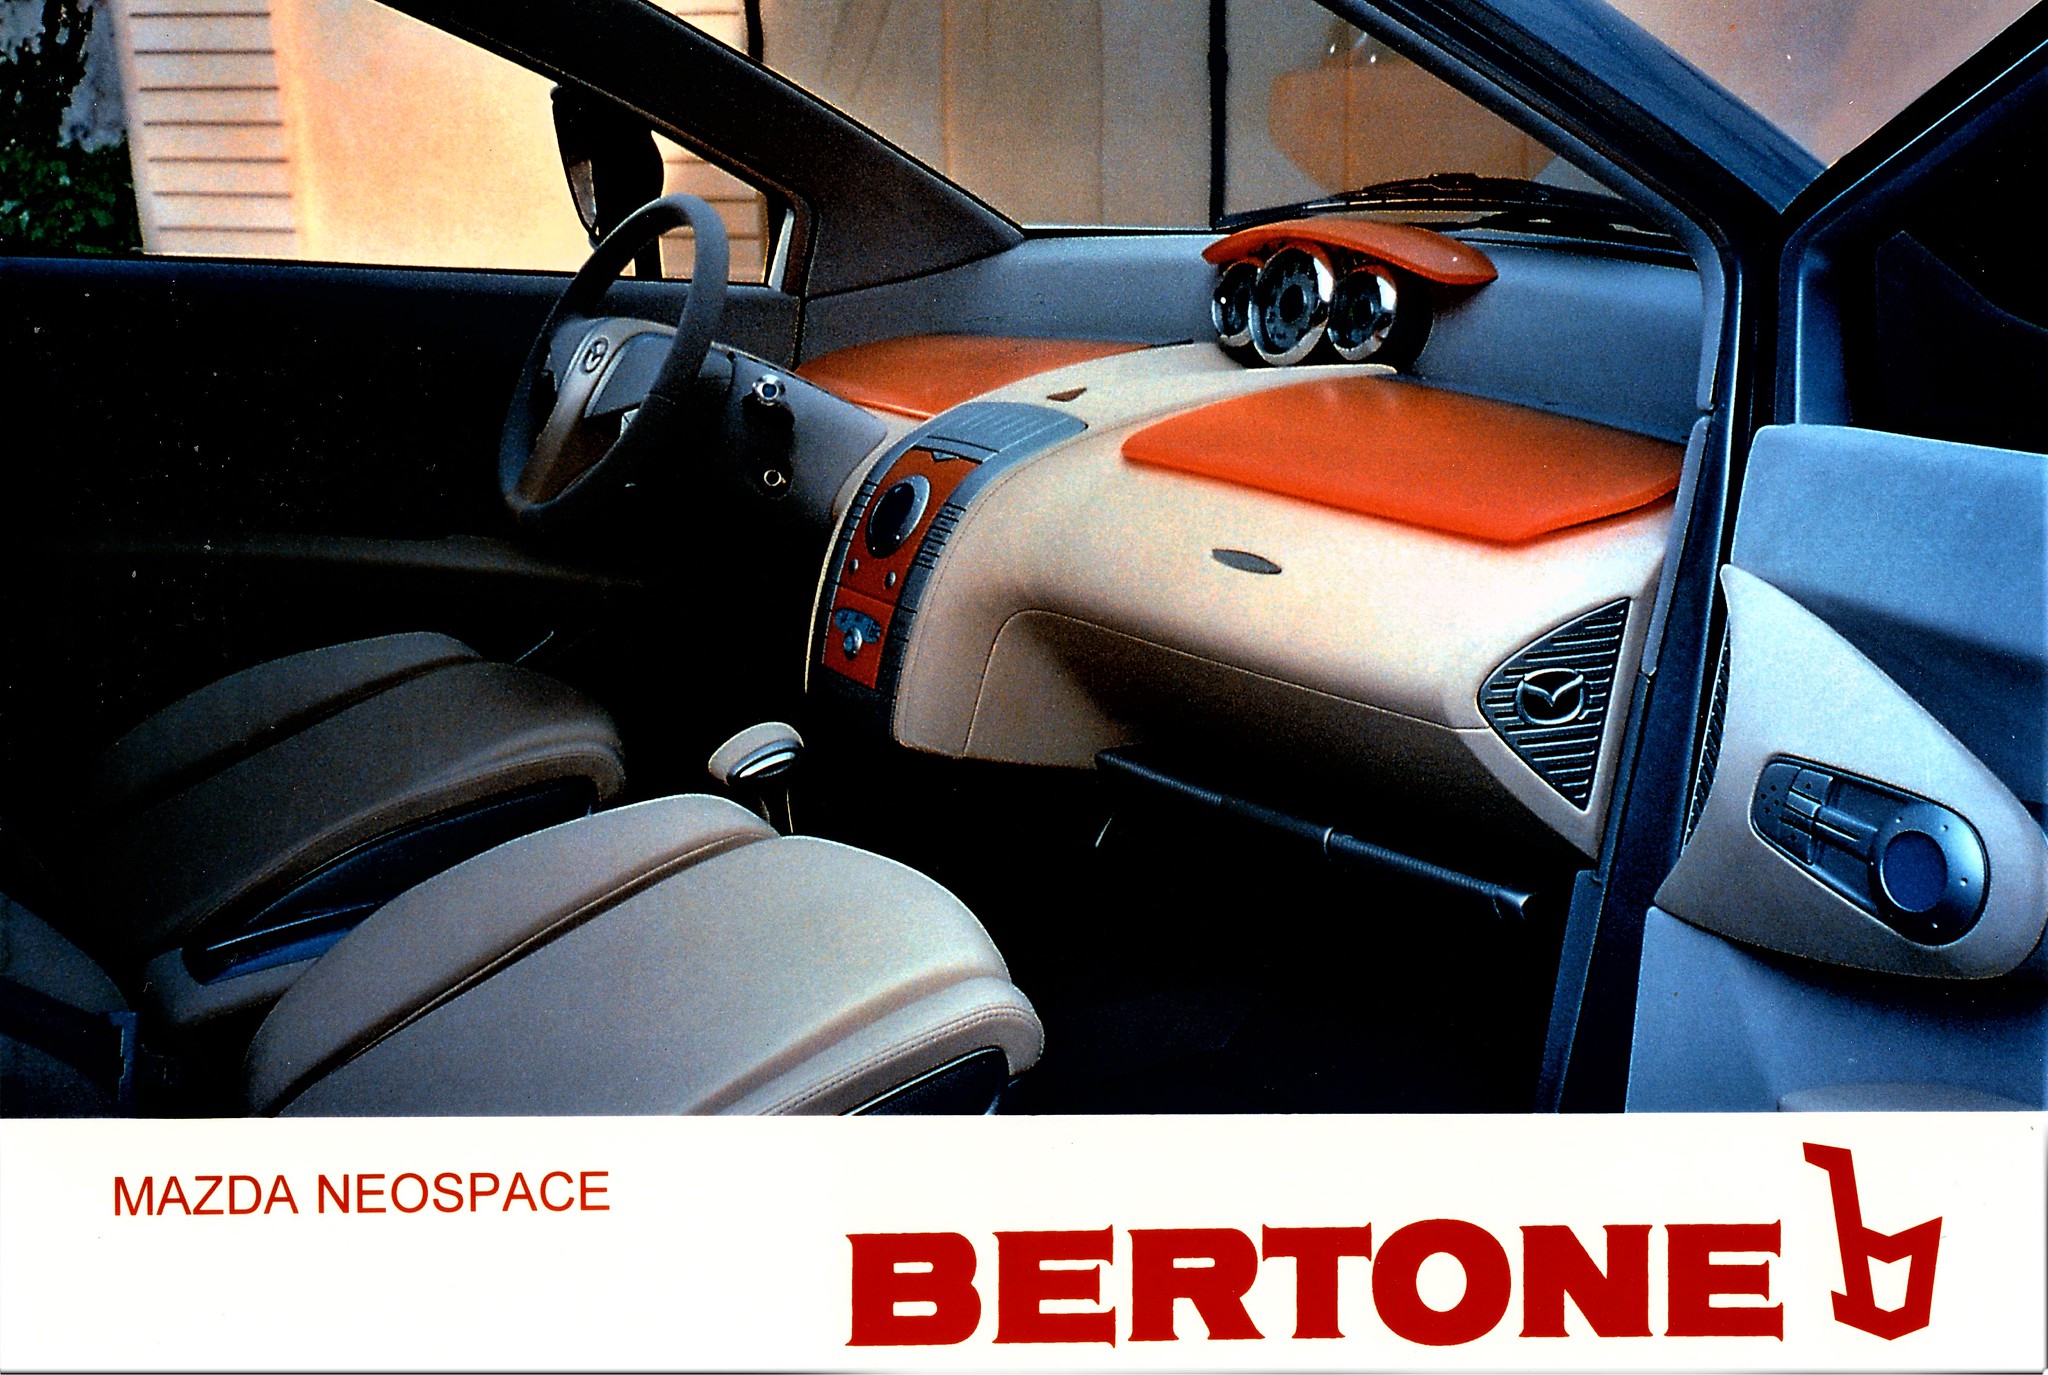 Mazda Neospace Concept (Bertone), 1999 – Interior